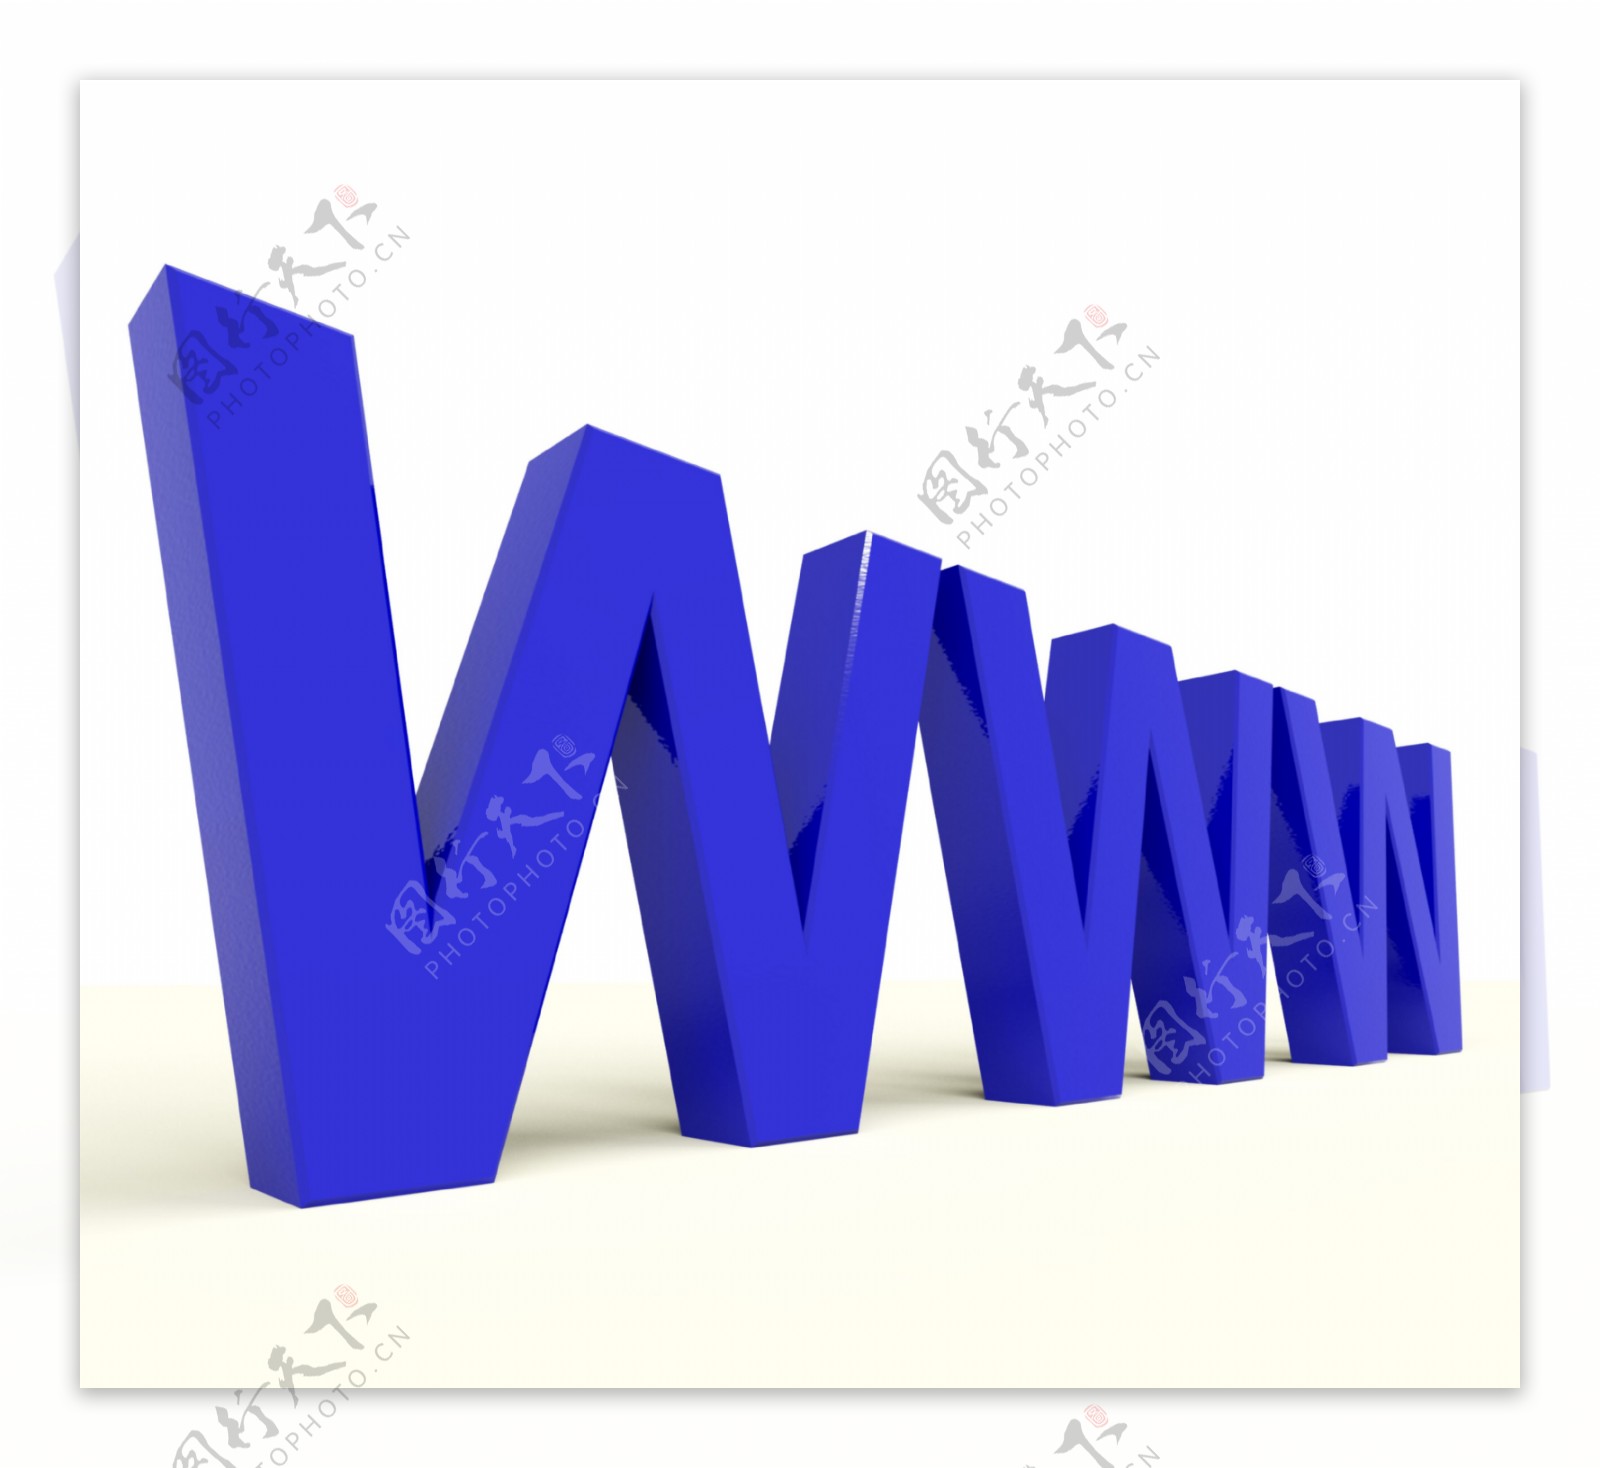 WWW字显示在线网站或互联网